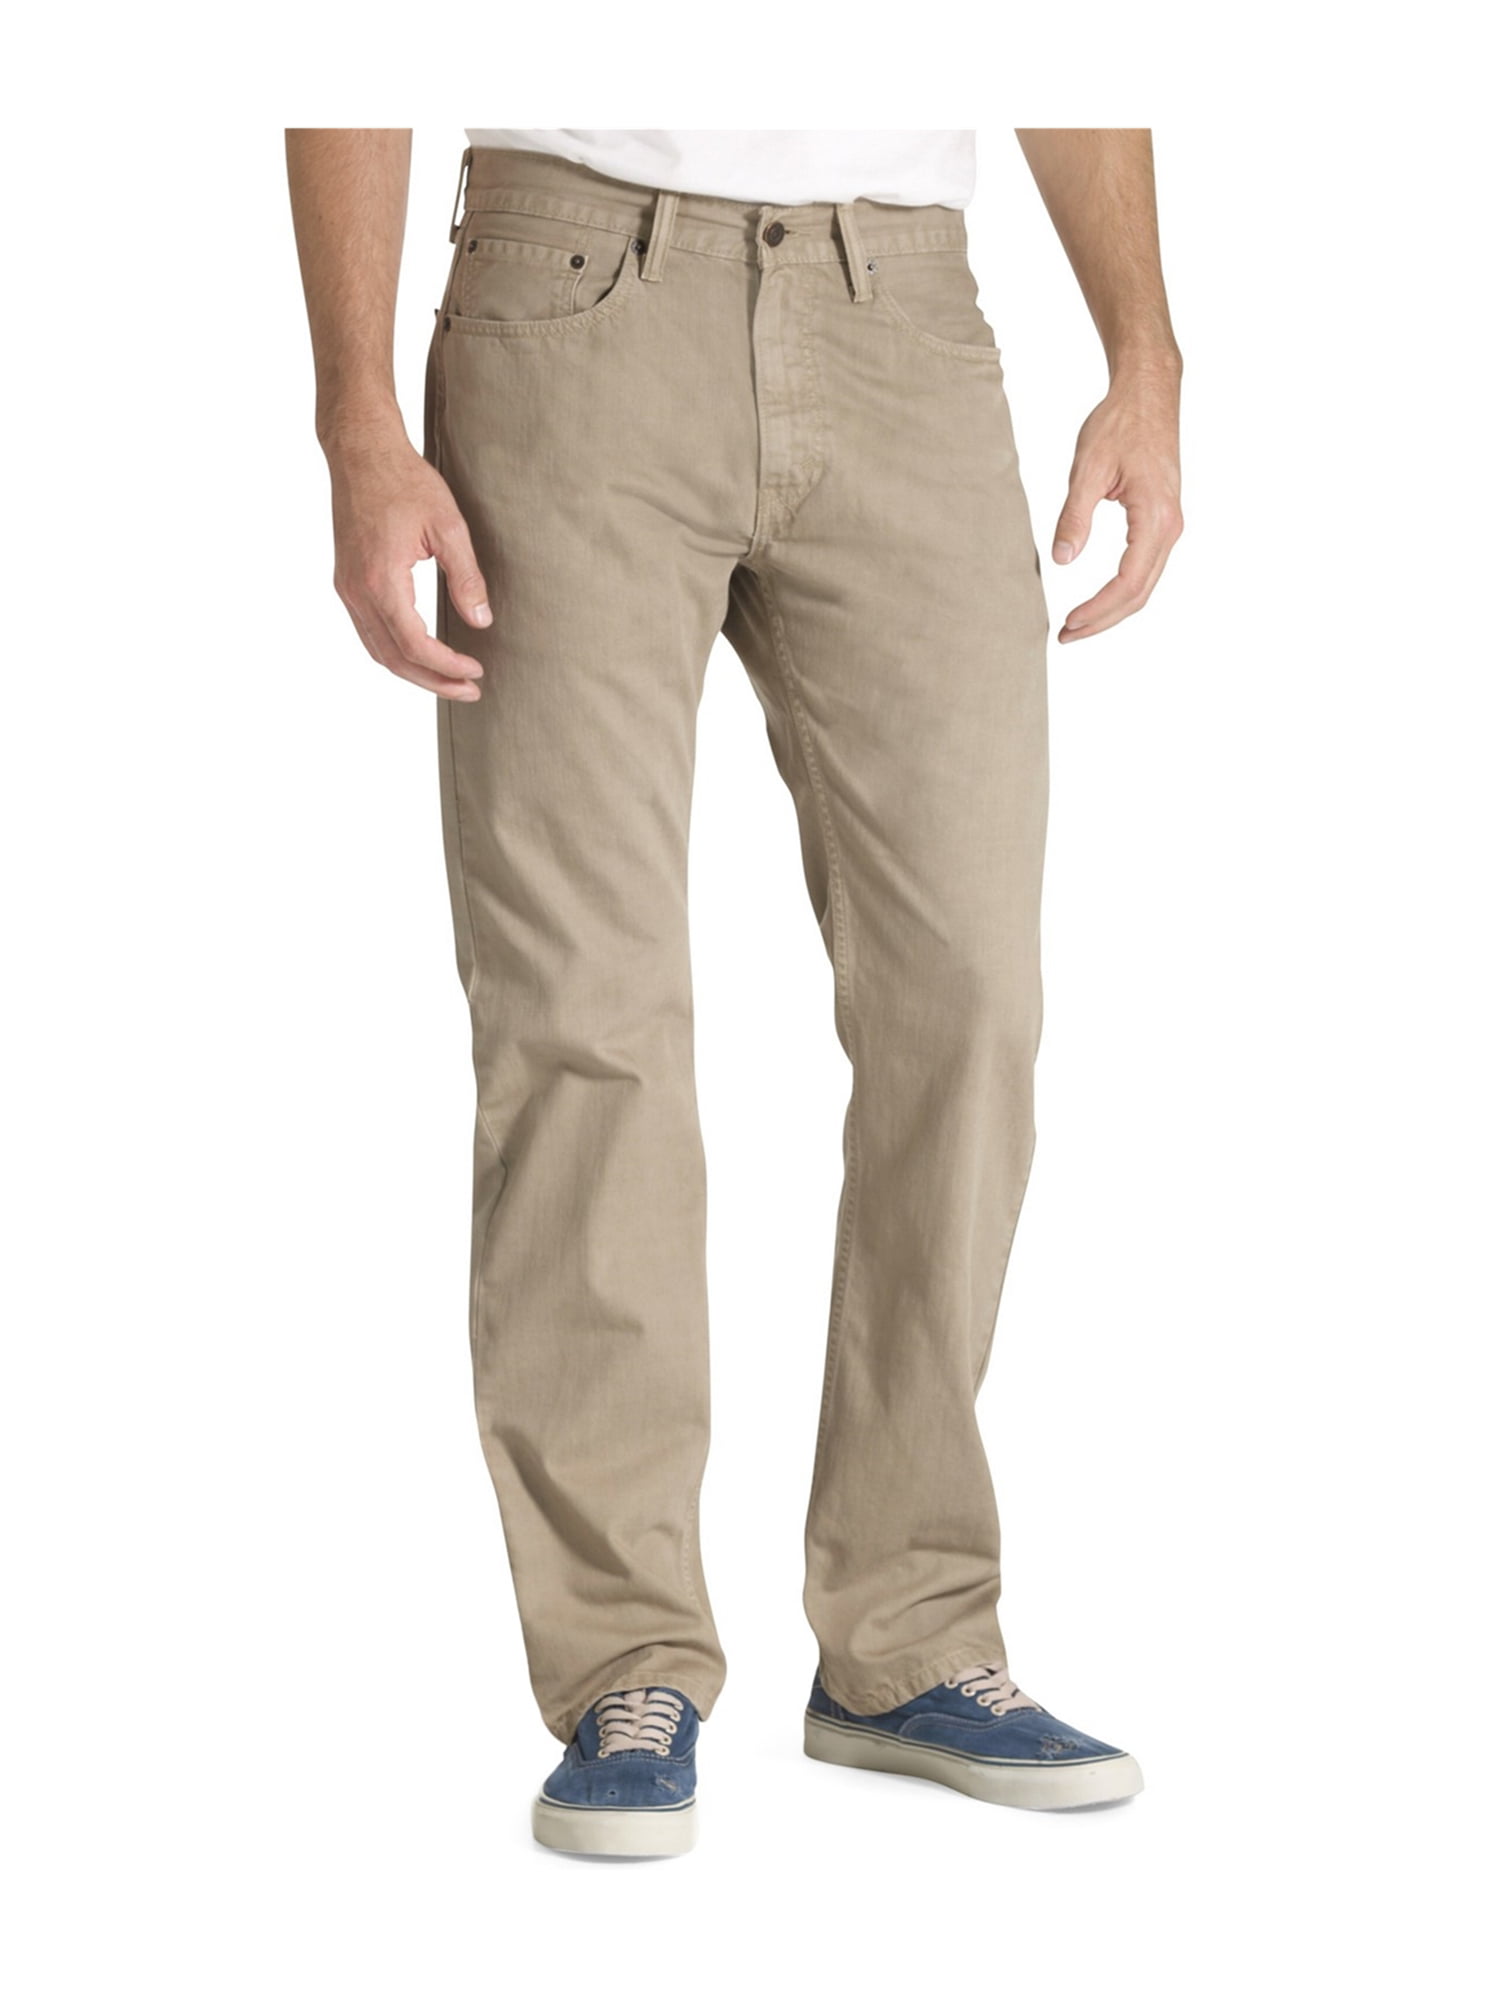 Levi's Mens 505 Twill Regular Fit Jeans timberwolf 38x32 | Walmart Canada